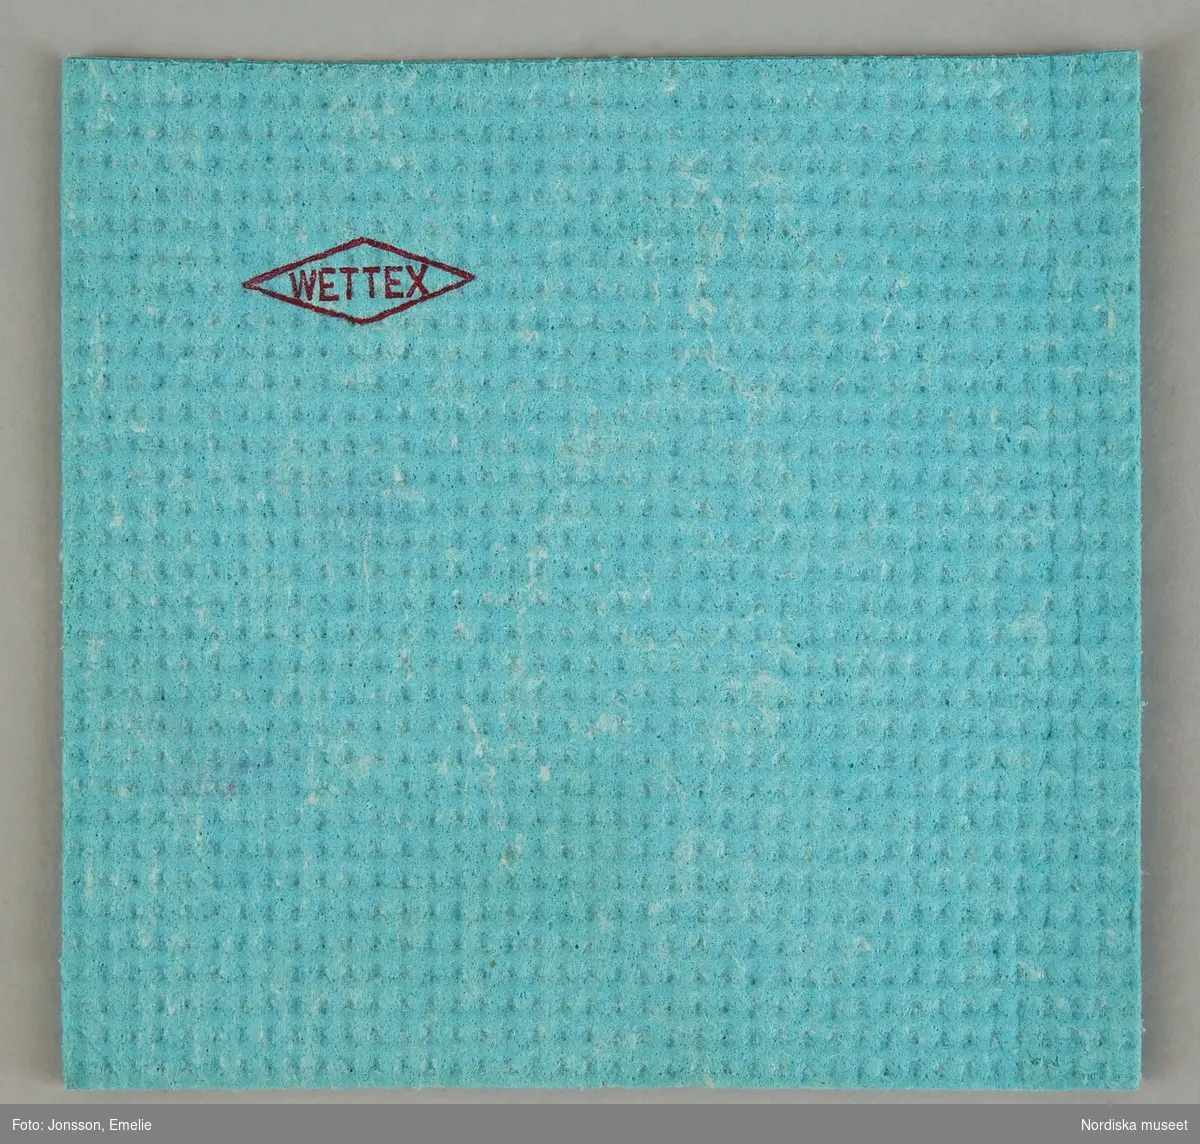 Huvudliggaren:
"Hushållsartiklar:
a) diskborste, skaft av blå nylon, borst vit nylon, märkt 'Gloria Husqvarna', skaft L 21 cm.
b) torkduk, 'Wettex', cellulosa, blågrön, mått 20 x 20 cm.
c) tvättmedelsförpackning i blå-röd-vit kartong 'JÖR'. H 20,3 cm Br. 13,5 cm.
d) Toalettpappersrulle, vit, märkt i blått 'Edet kräpp, H 11 cm
Prov på hushållsartiklar i ett Stockholmshushåll 1964."